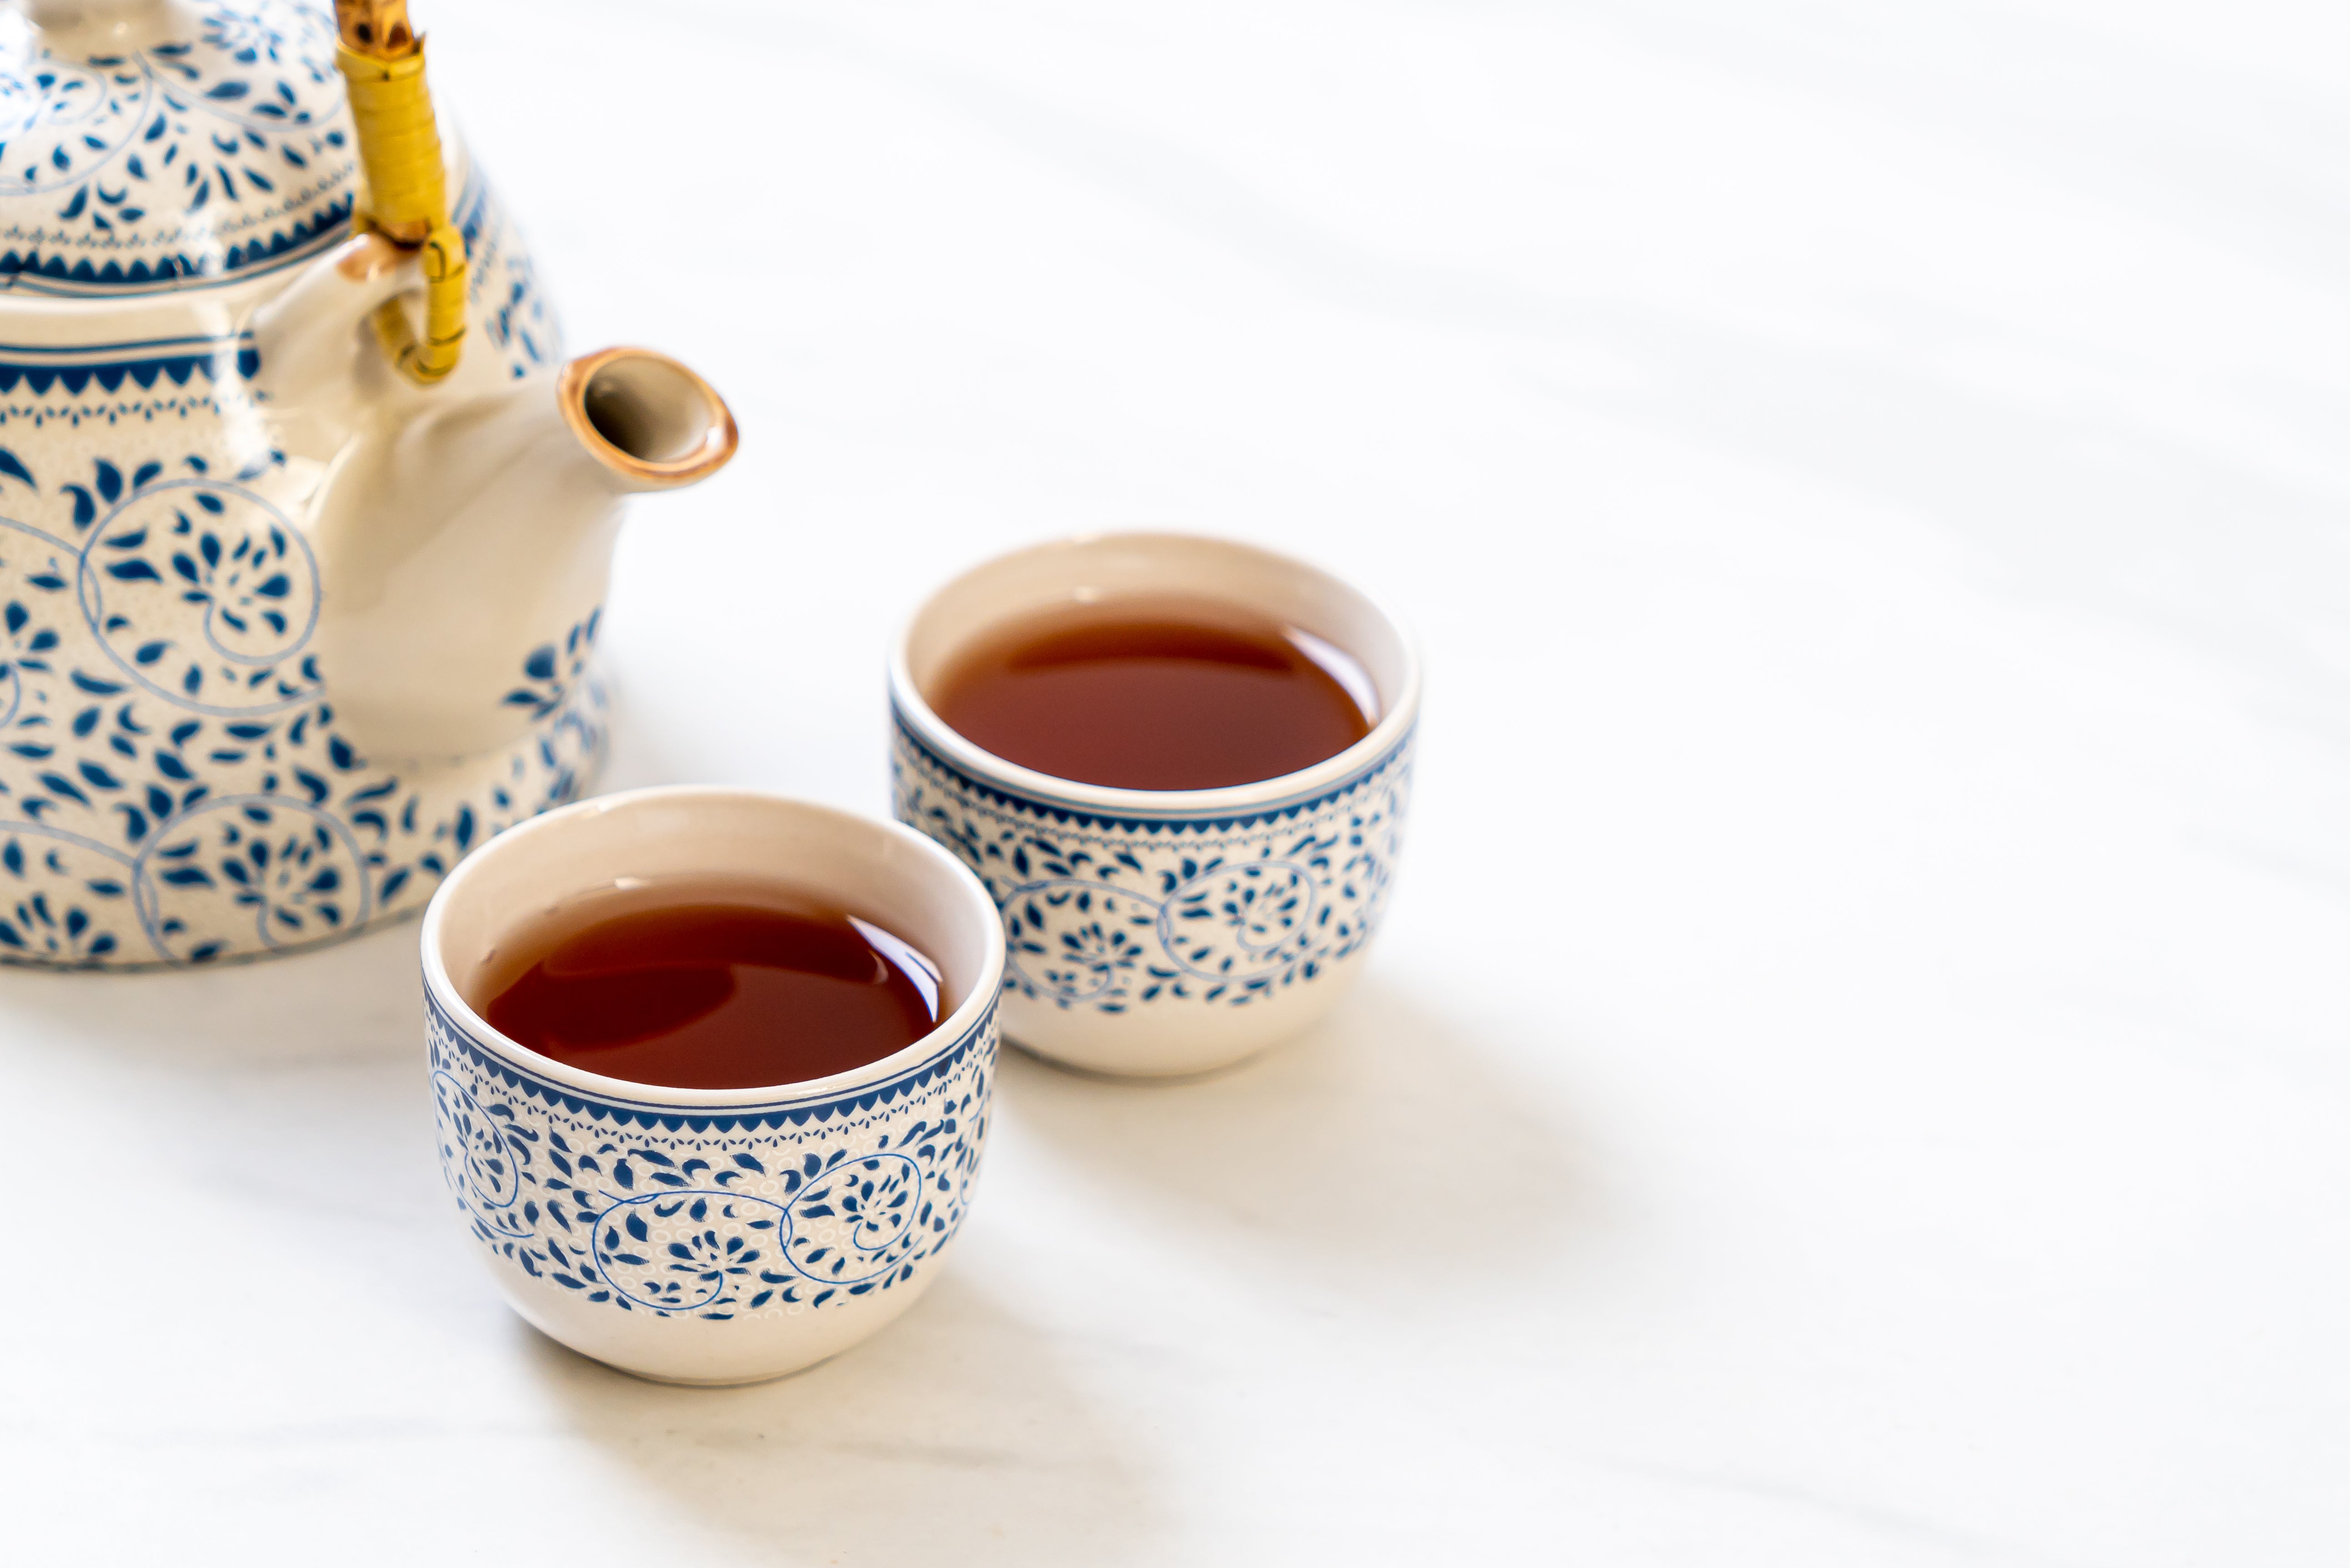 Les 5 astuces pour le thé au quotidien